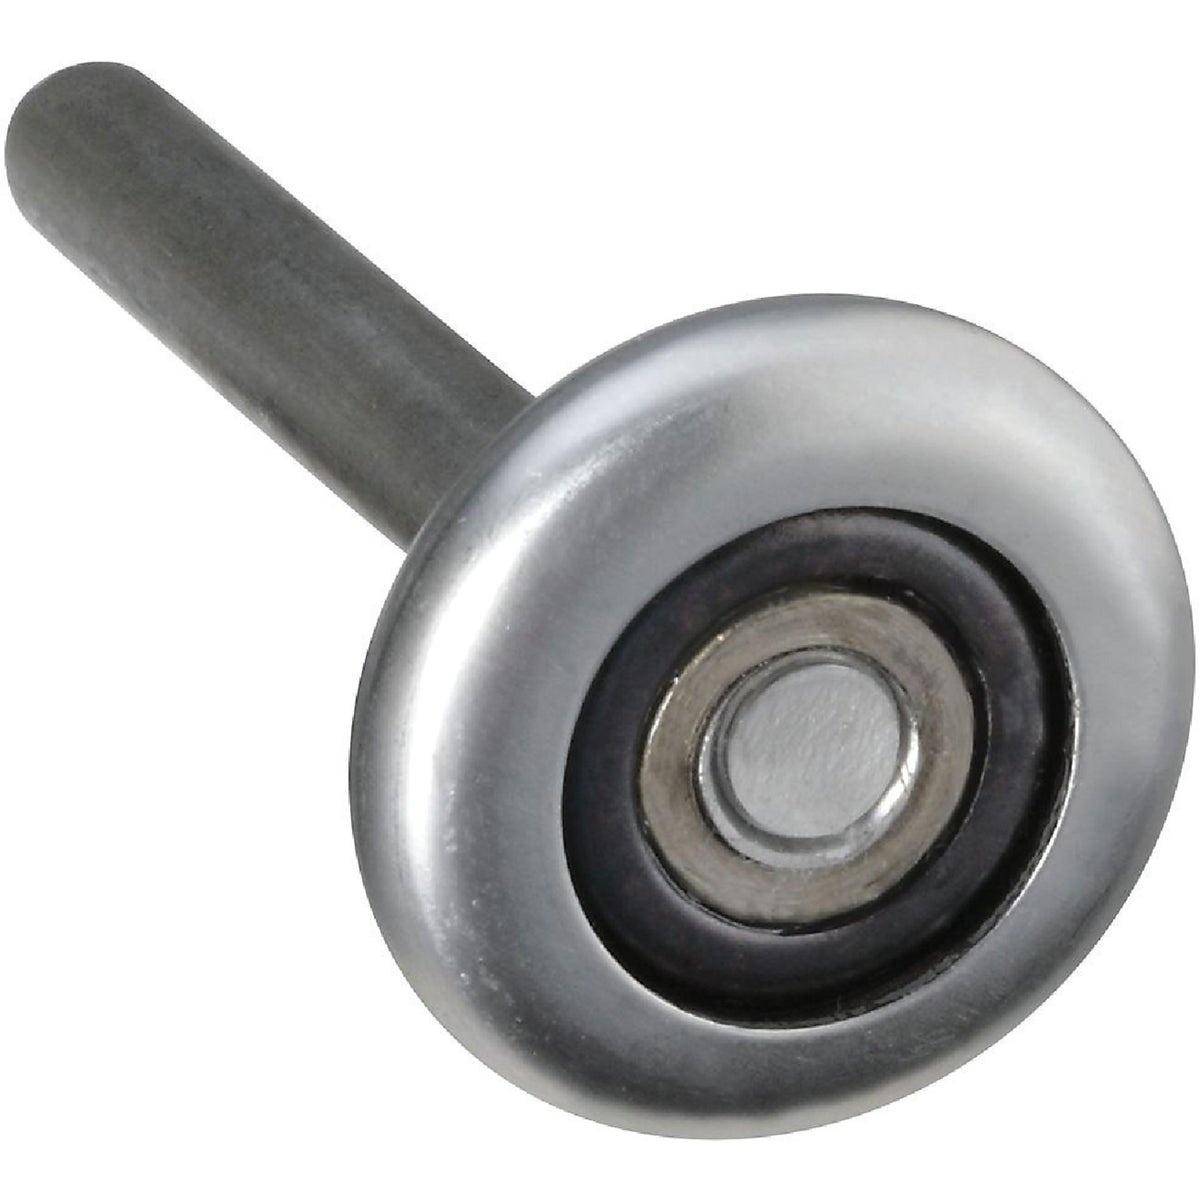 Item 239557, Heavy-duty steel garage door roller with steel inner race.